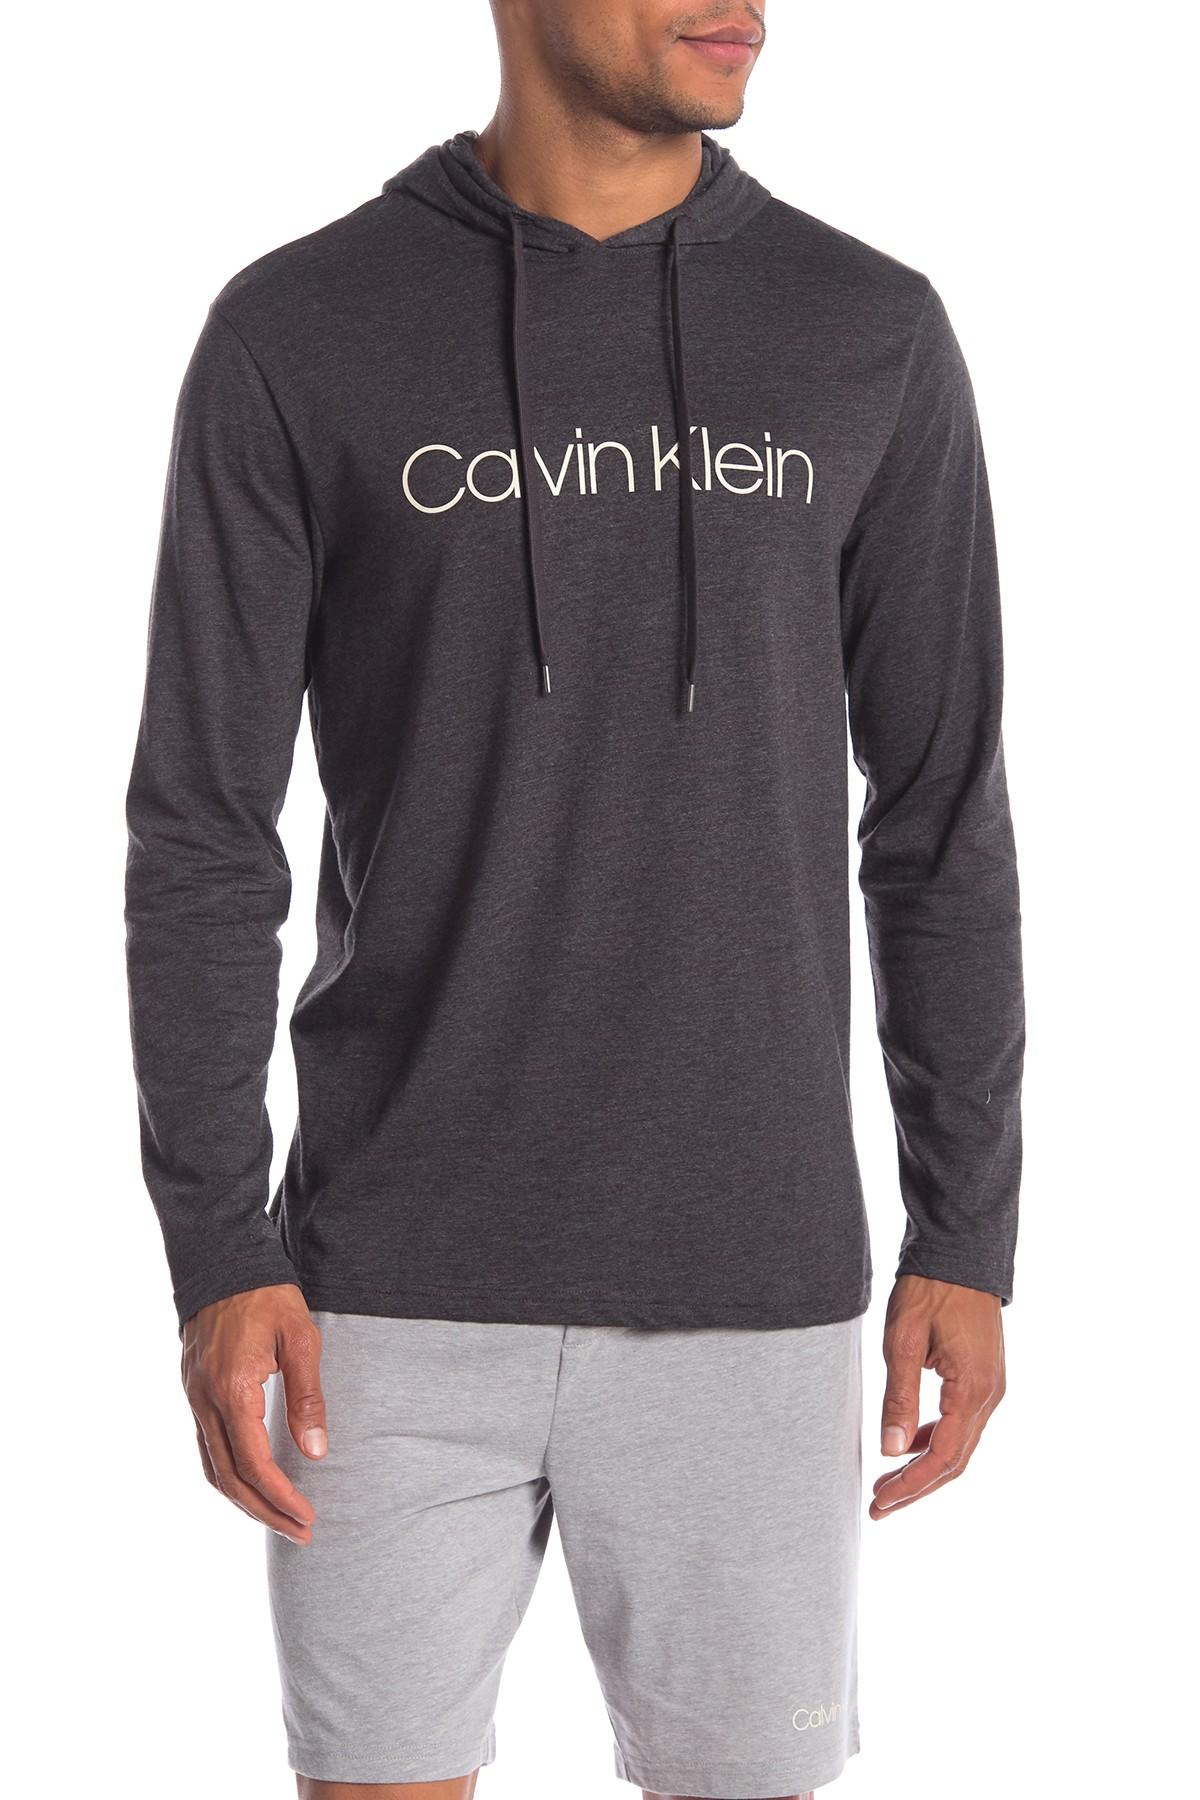 Calvin Klein Long Sleeve Hoodie in Gray for Men - Lyst